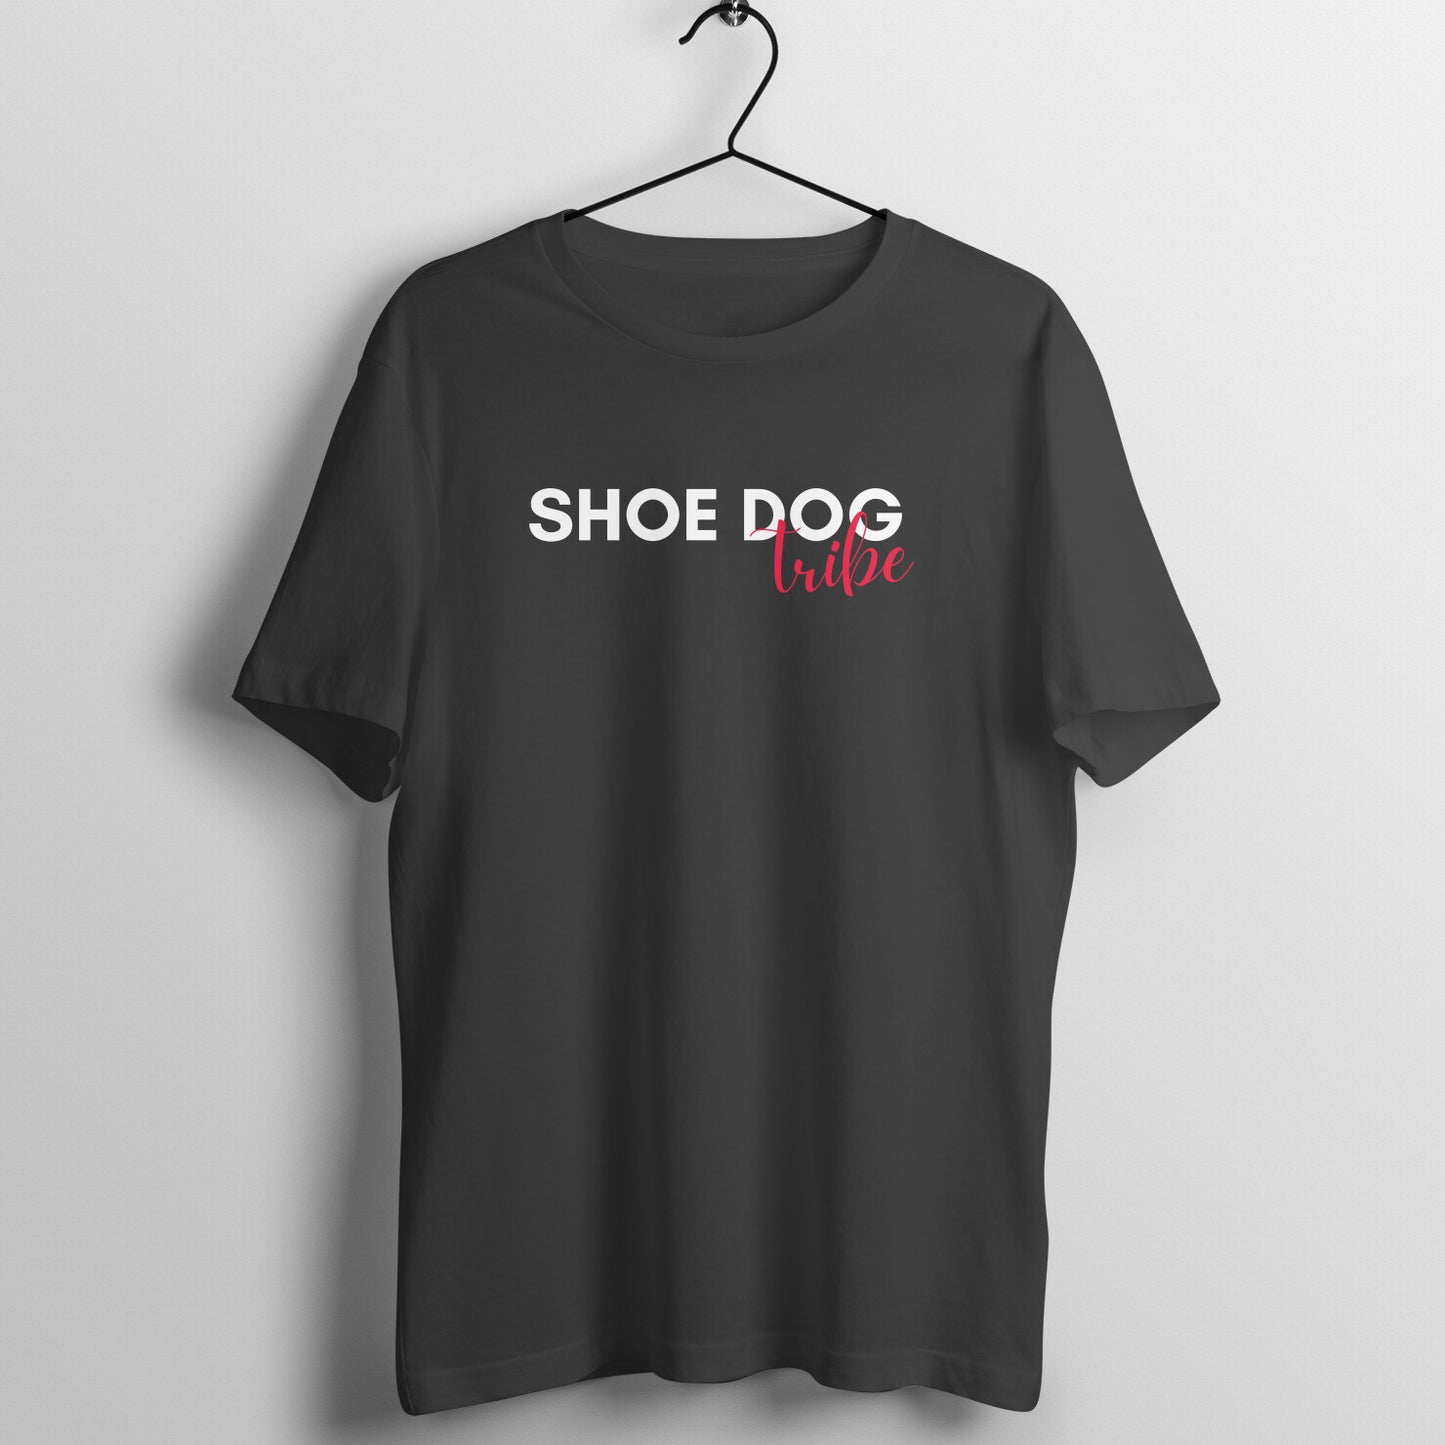 Shoe Dog Tribe Tshirt